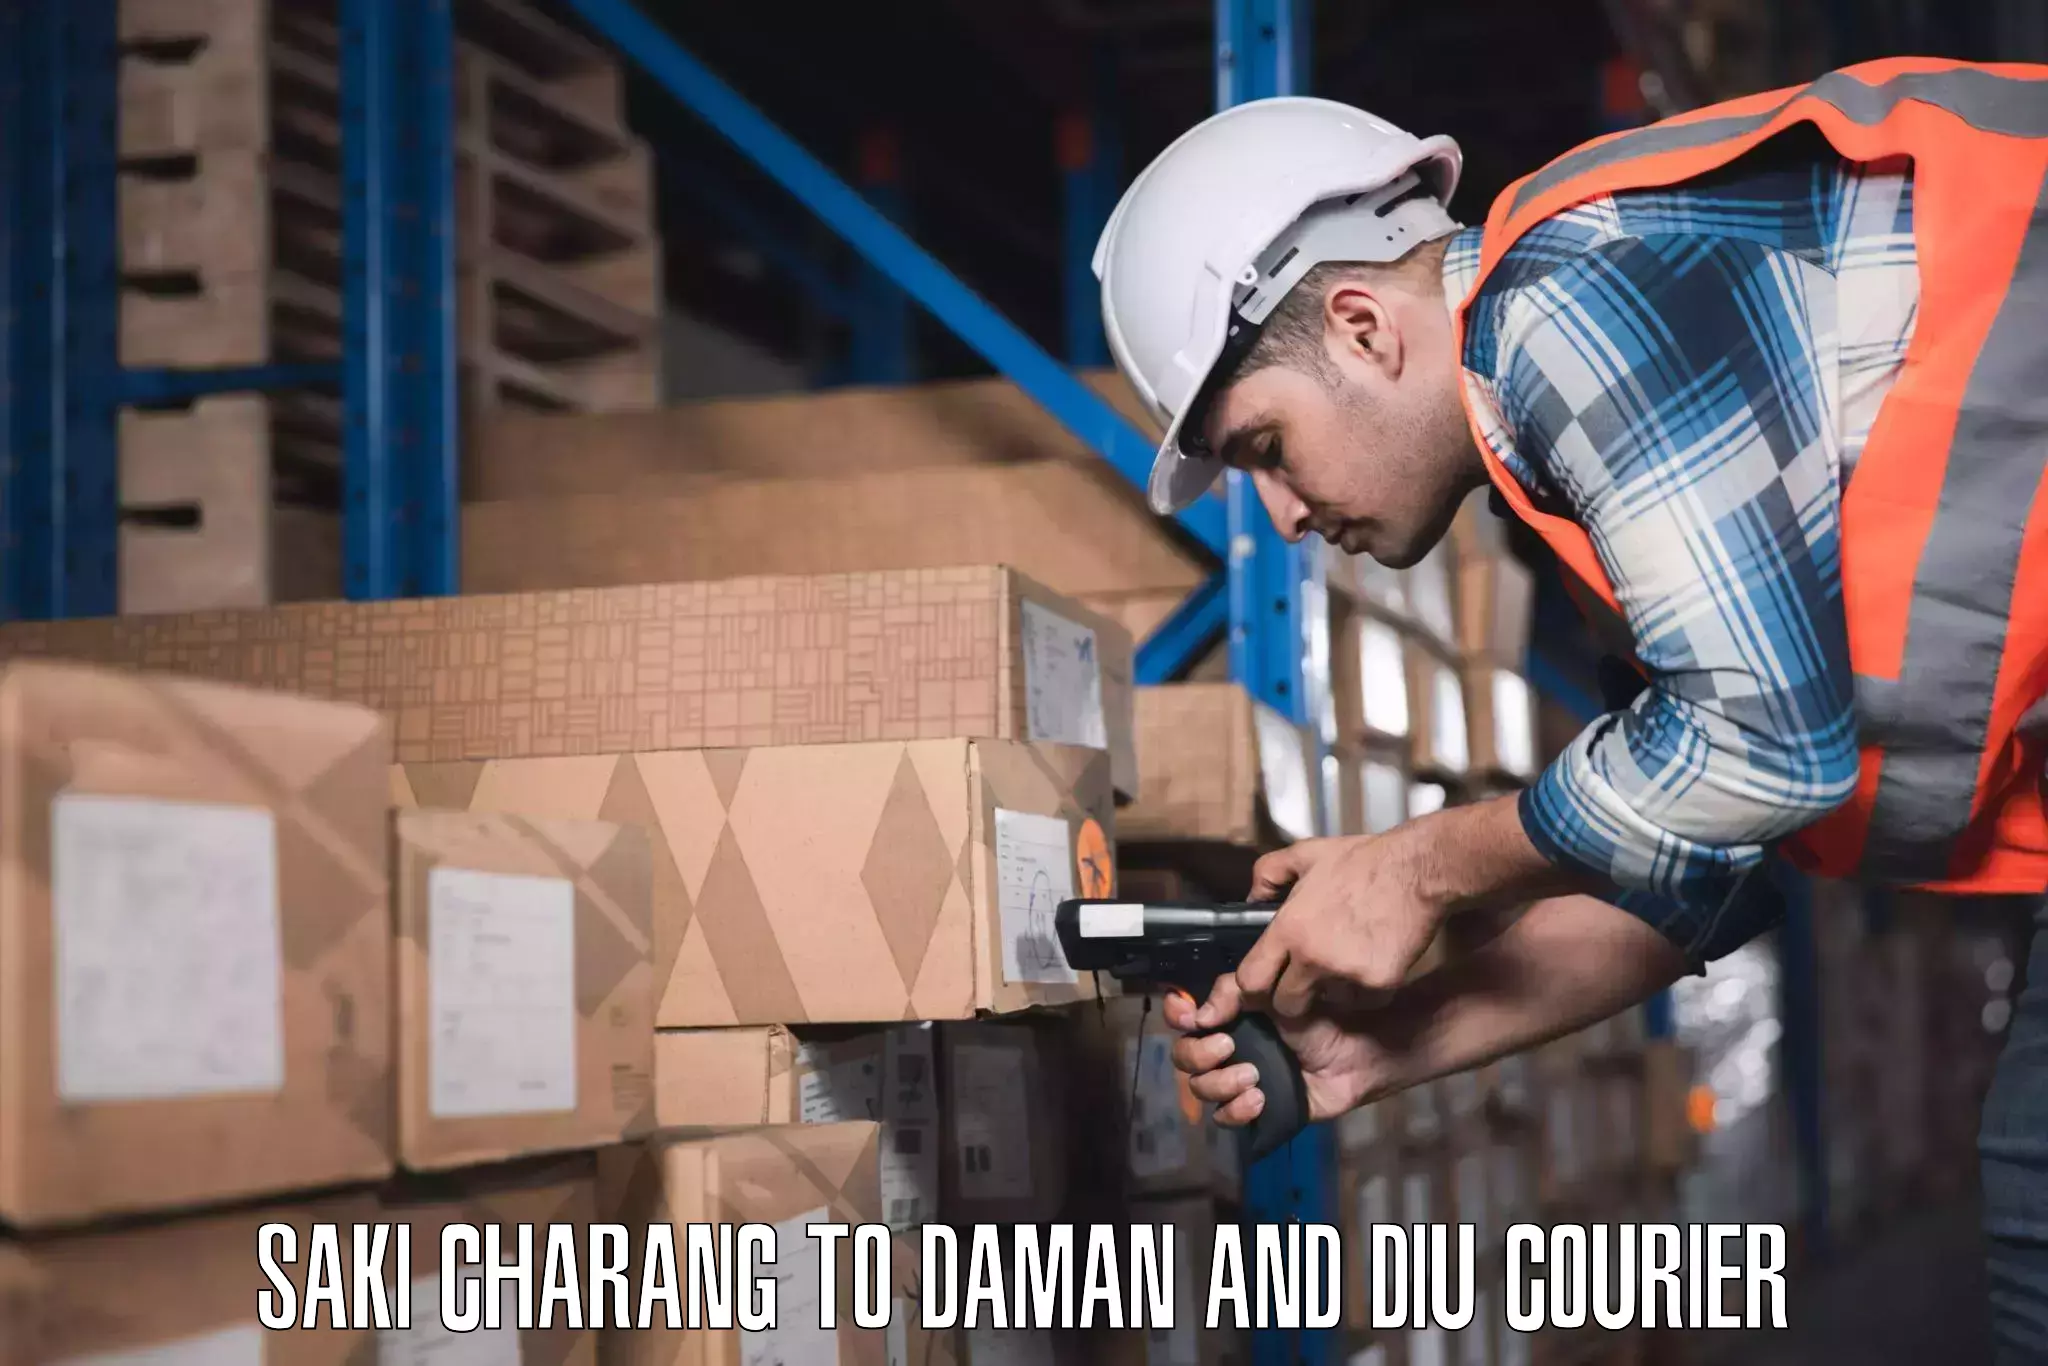 Luggage shipment strategy Saki Charang to Daman